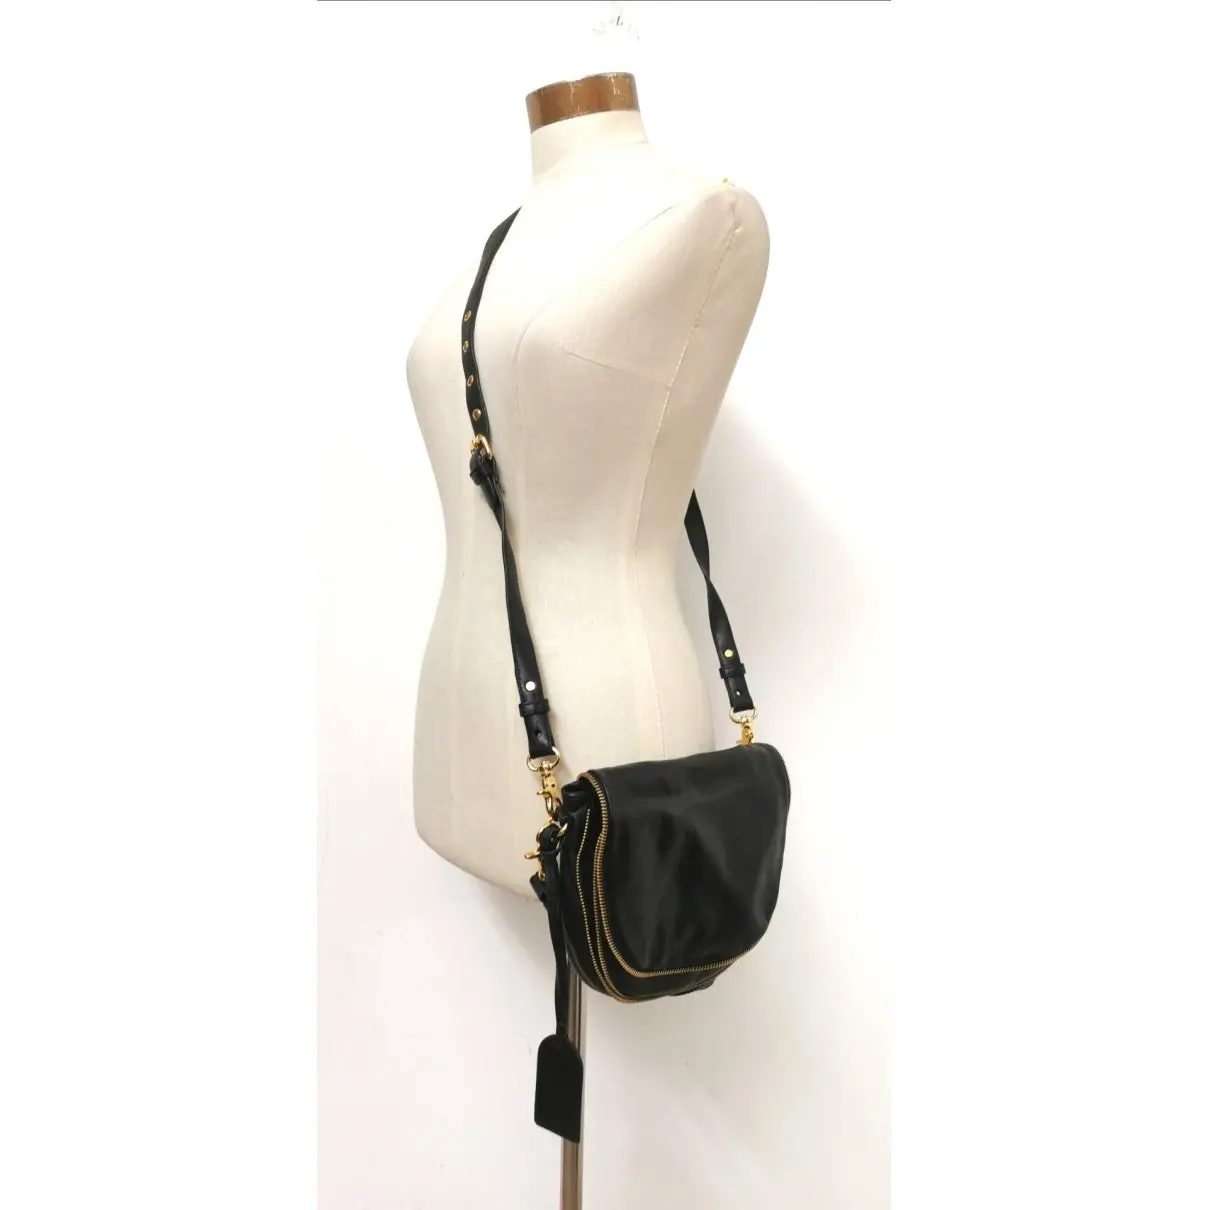 Leather handbag Badgley Mischka